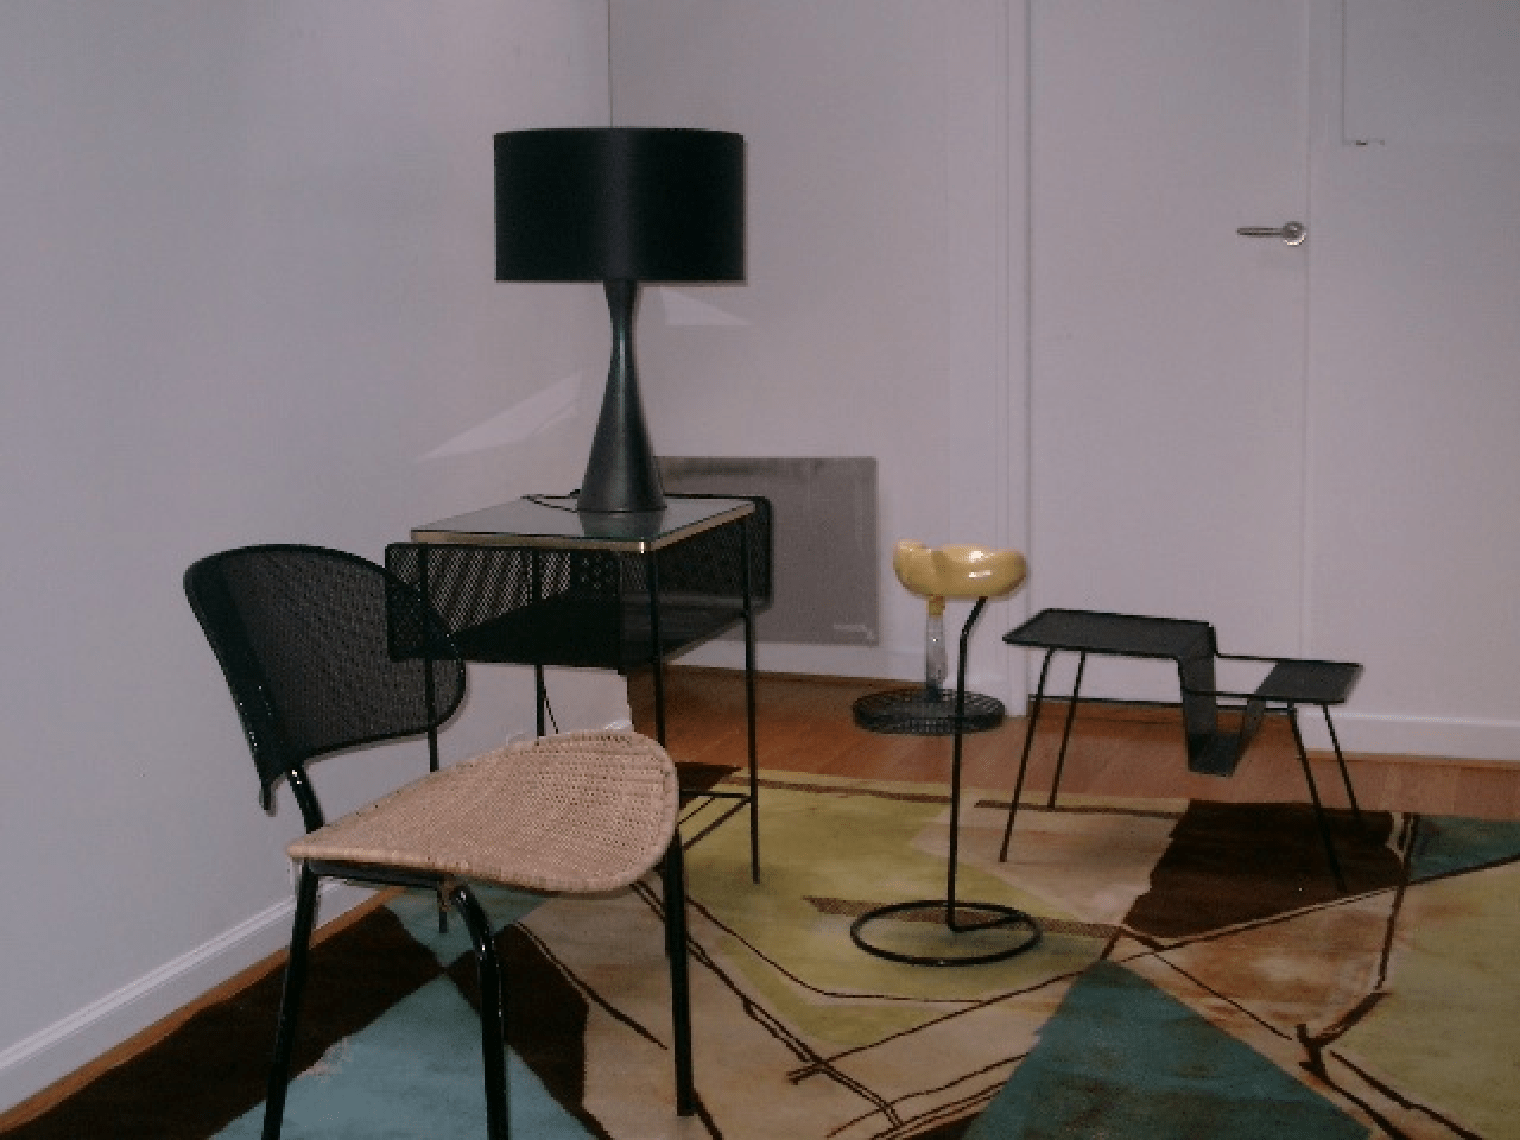 « Sur le tapis de Matégot », Galerie de Beyrie, Paris : Georges Jouve, Mathieu Matégot